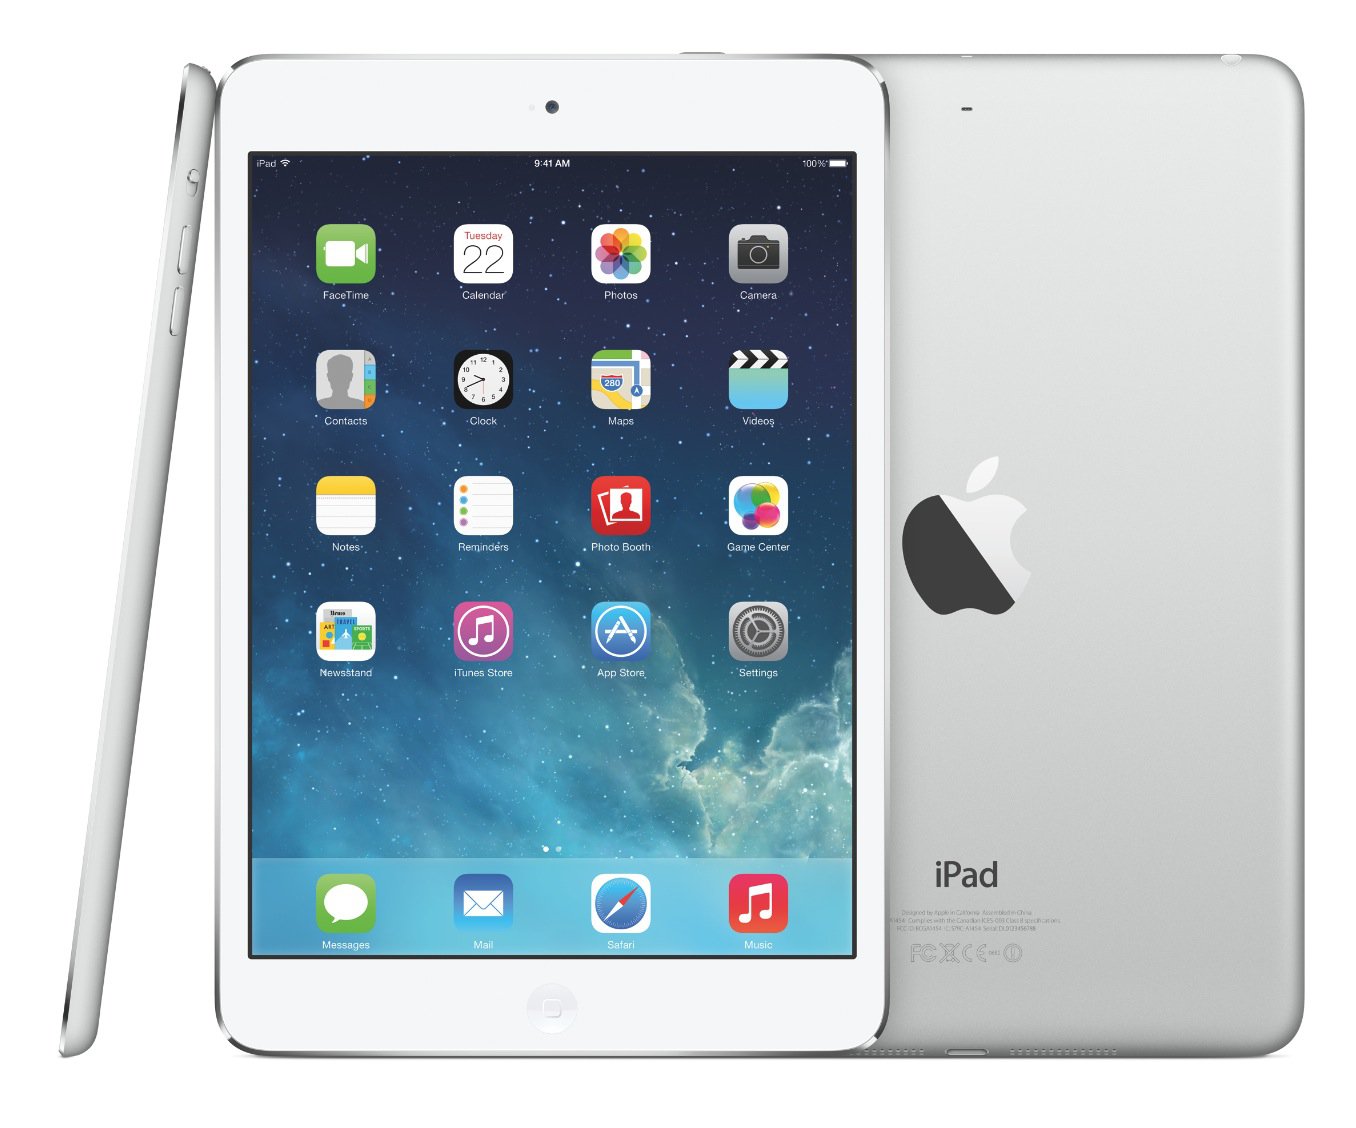 Offerte iPad anche oggi 11 agosto: ecco gli accessori a prezzo basso su Amazon